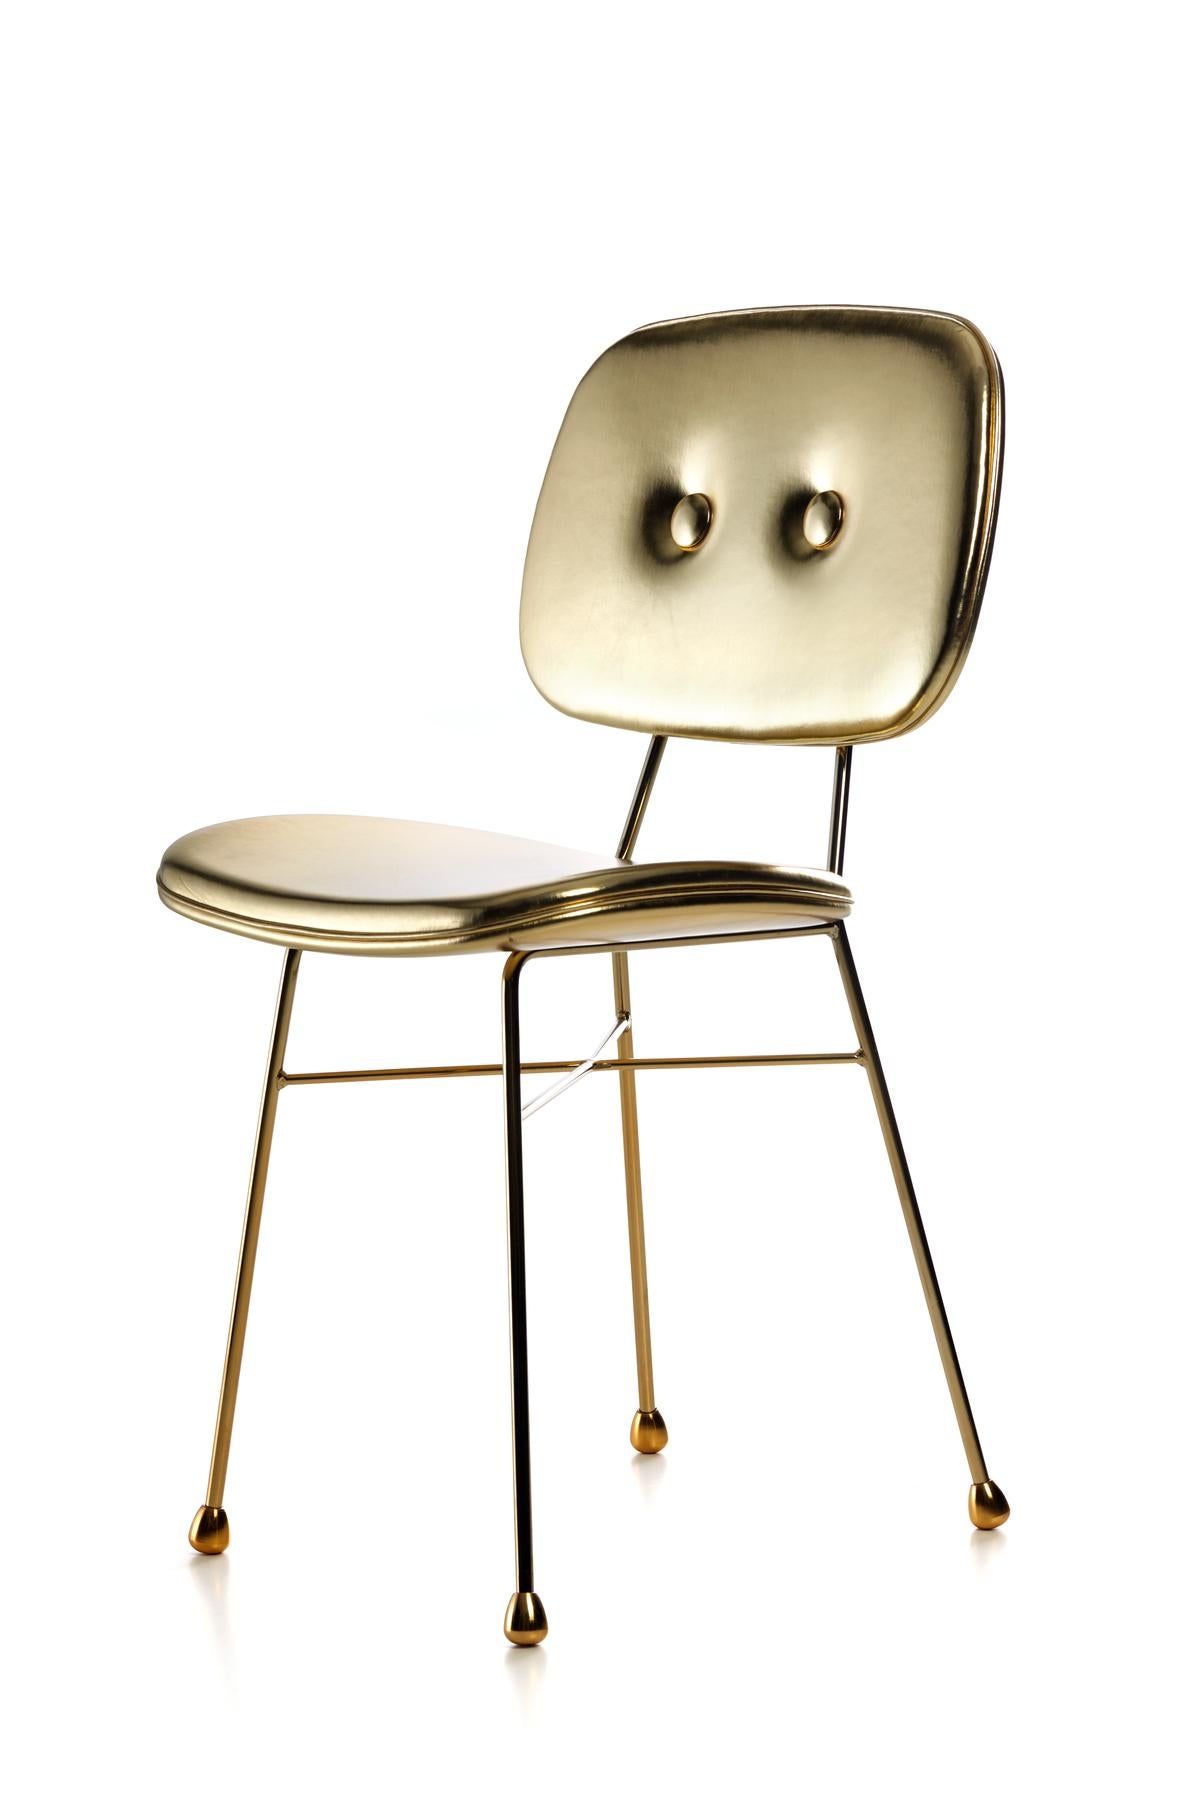 moooi golden chair